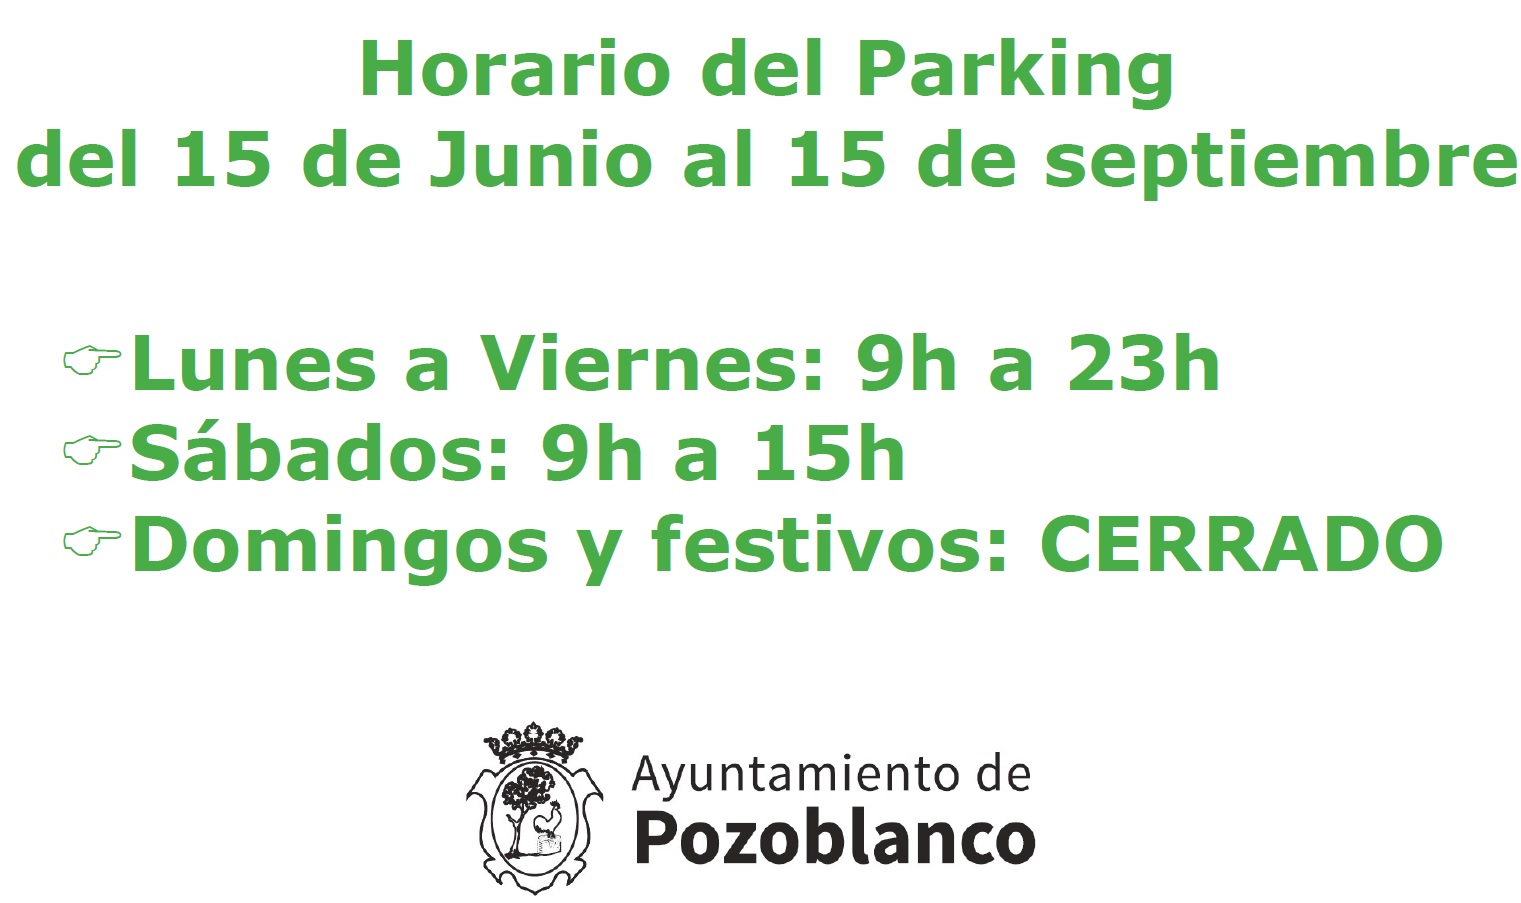 Cambio de estacionamiento de vehículos a partir del 1 de julio y horario de verano de los parkings subterráneos 1